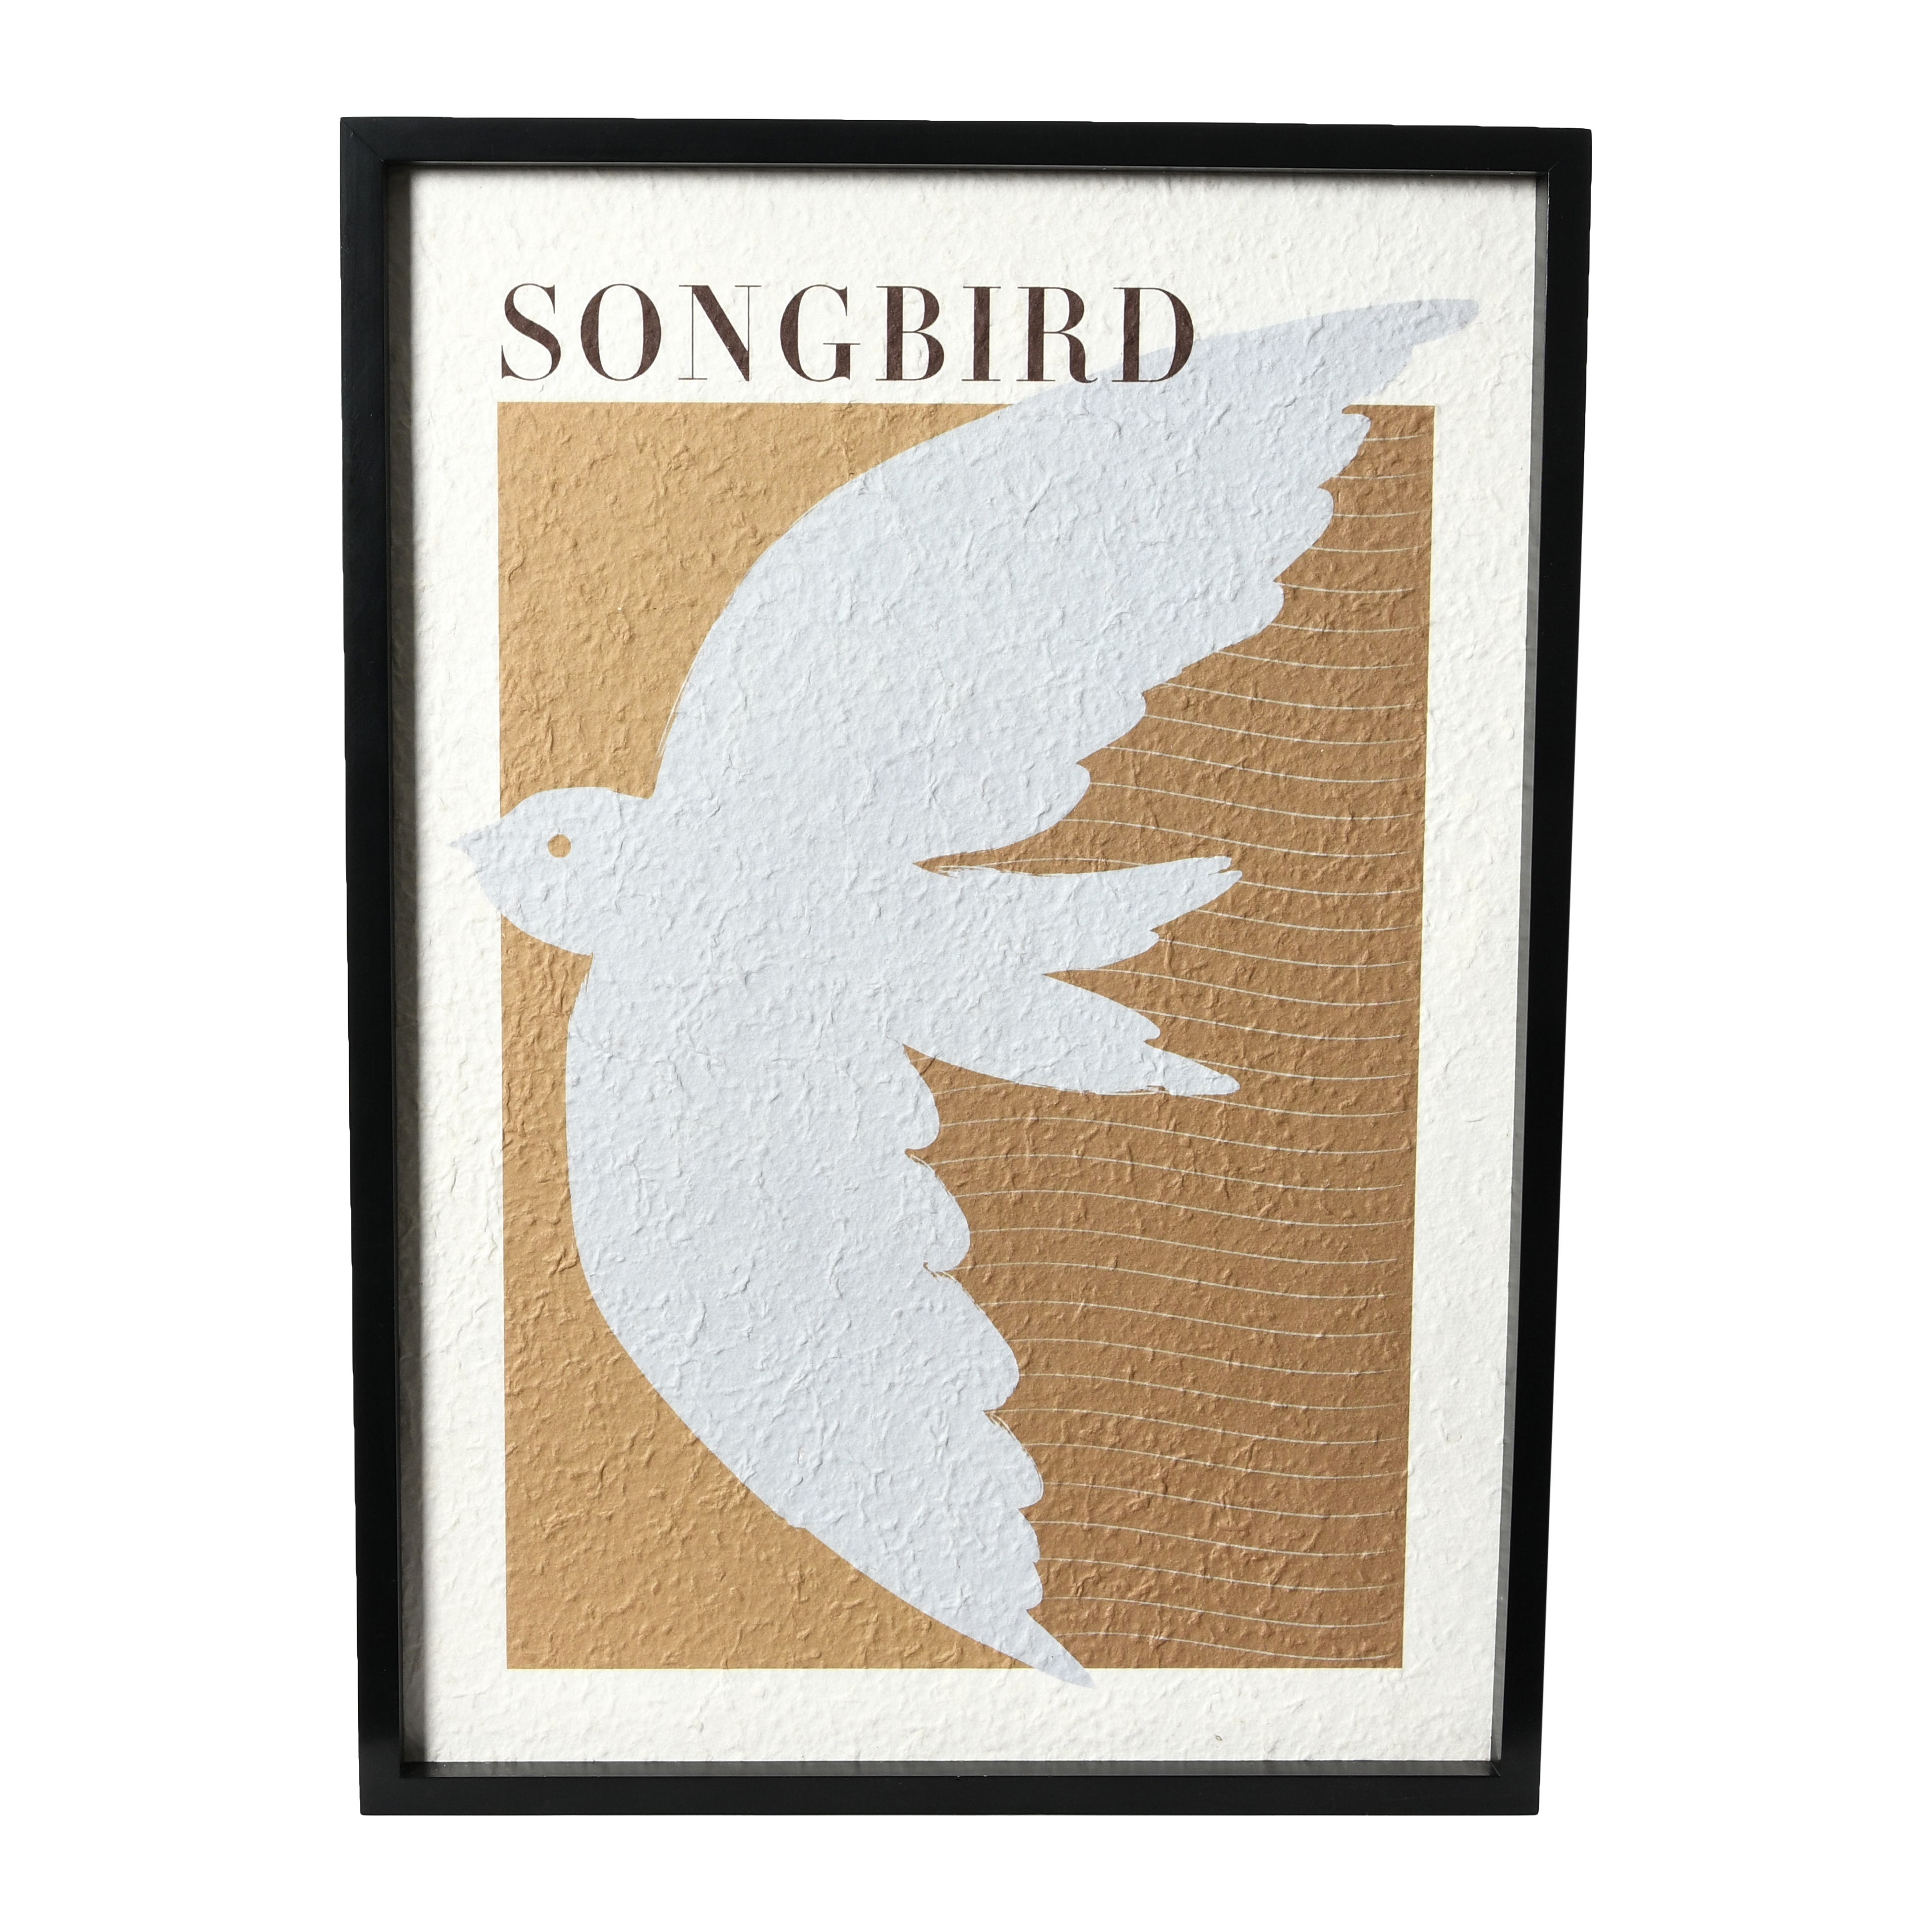  Wood Framed Wall Décor "Songbird", Multicolor - Image 0